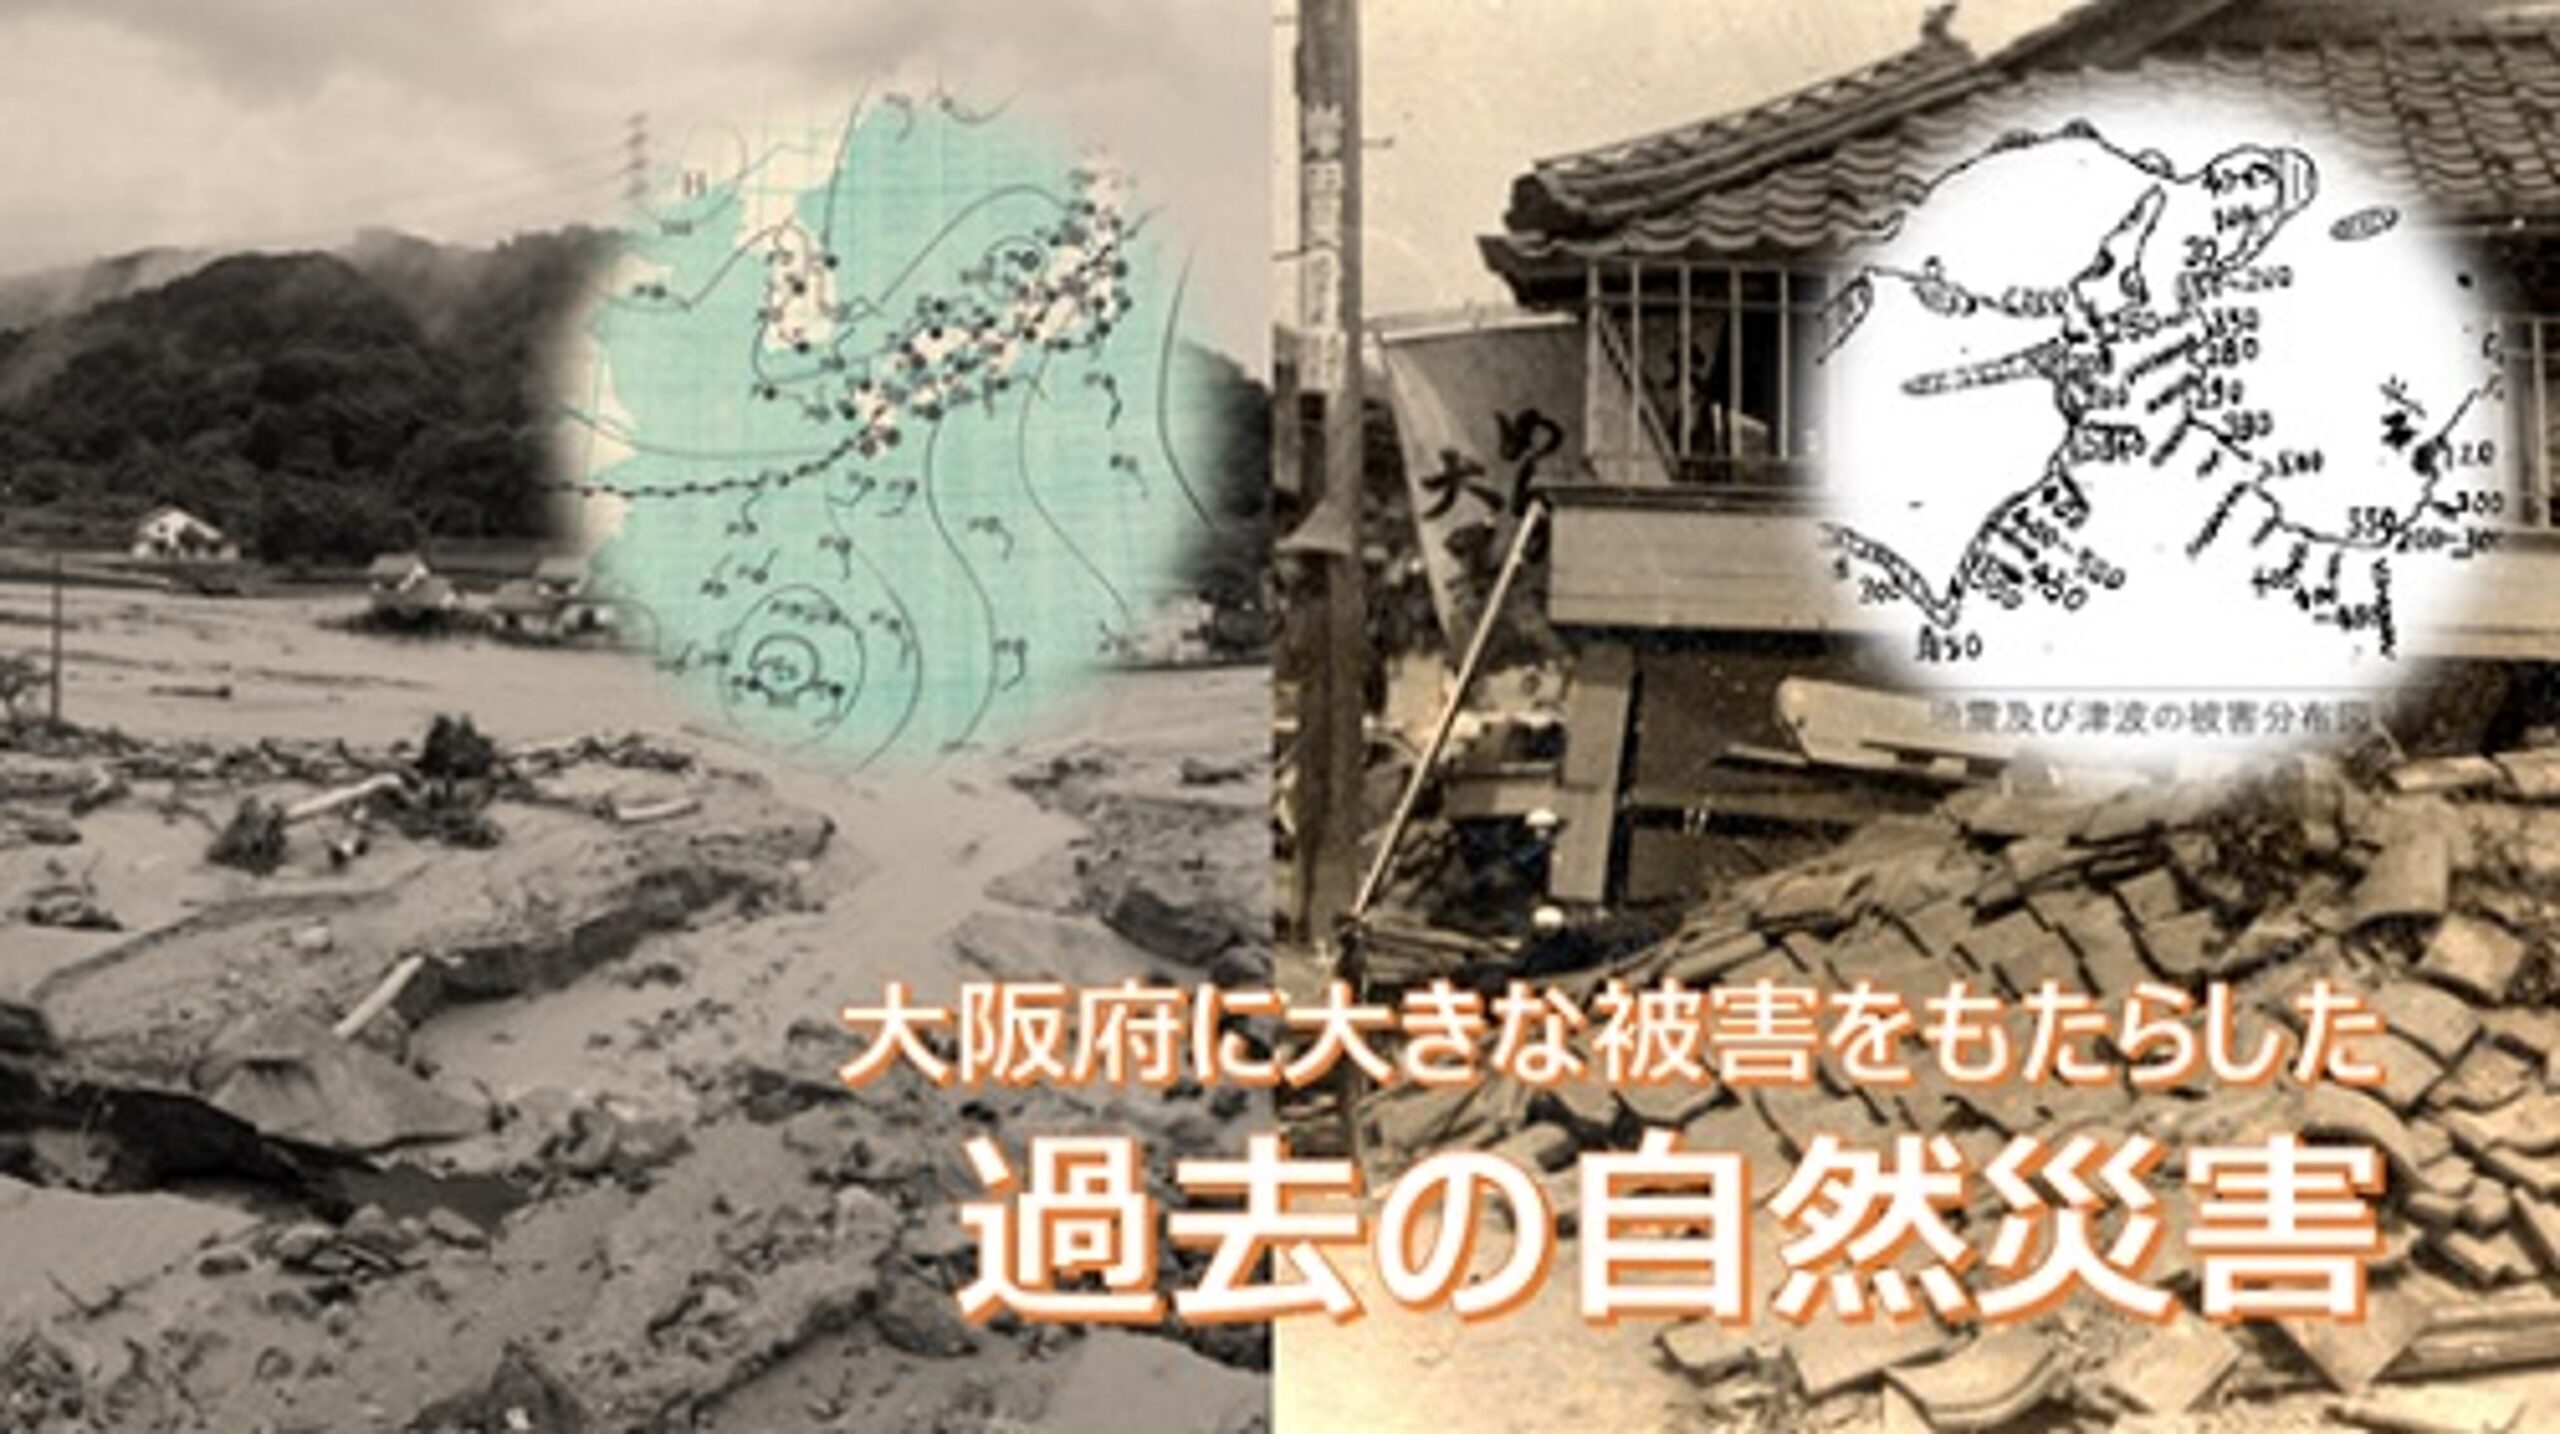 防災ログ 大阪管区気象台、過去の大きな自然災害のまとめページを公開